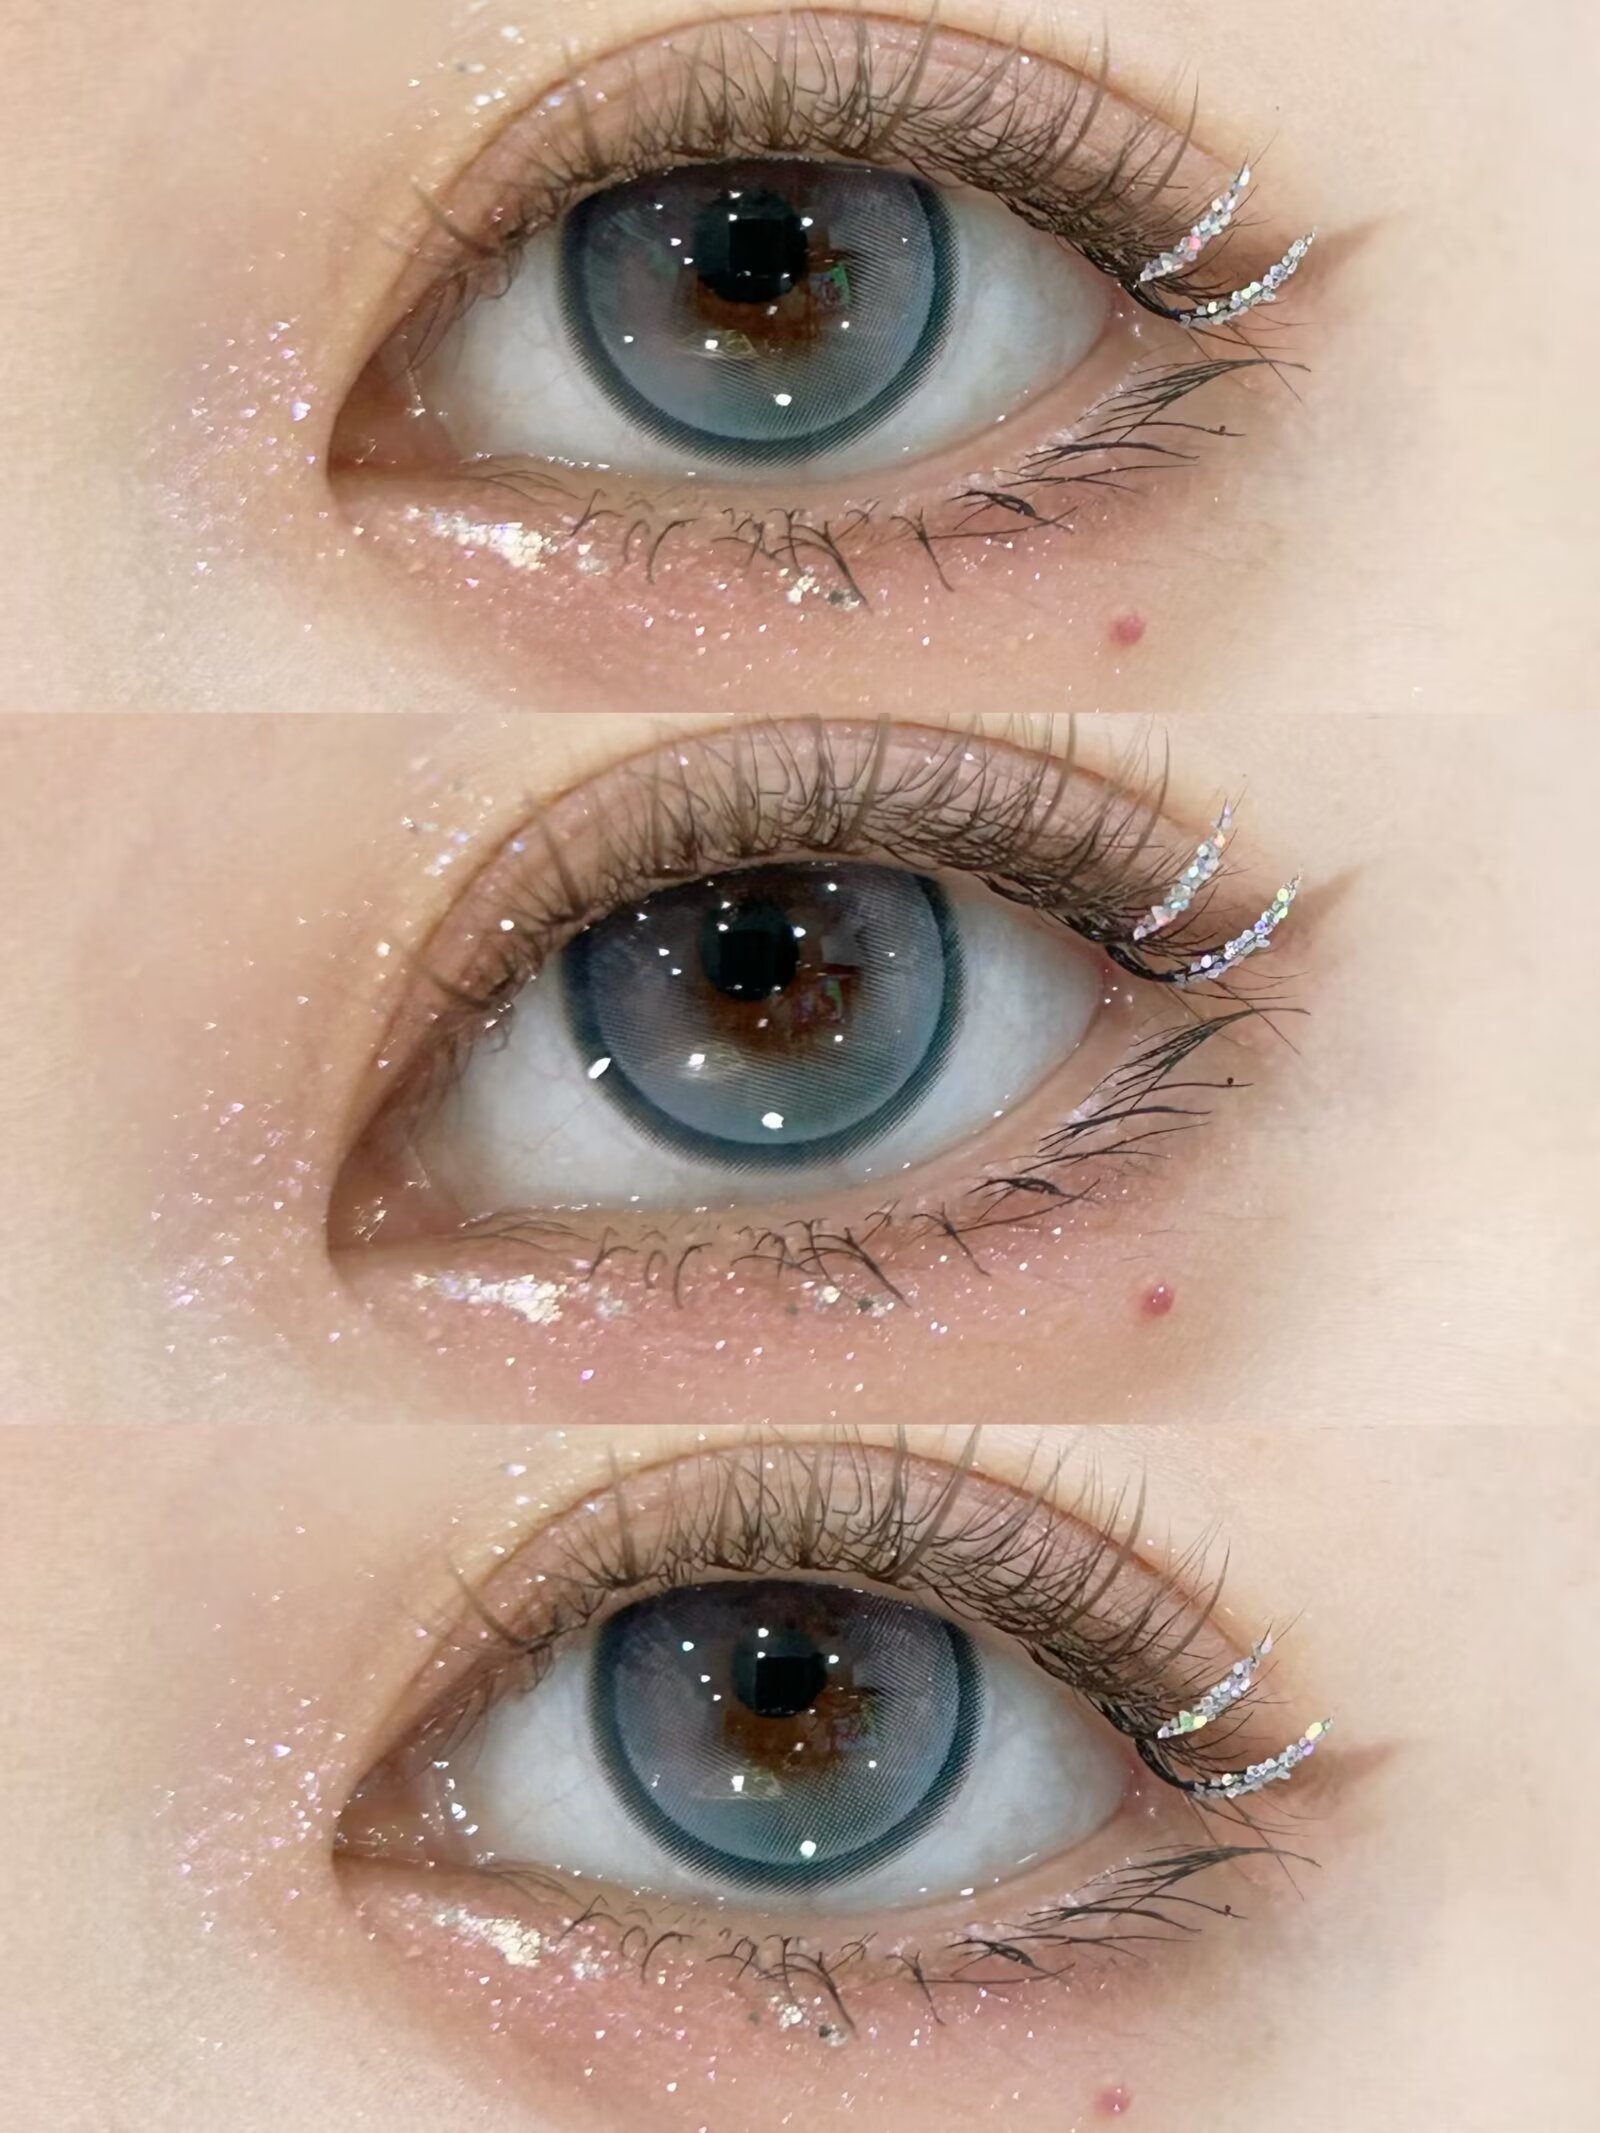 WOOLILENS 彩虹中毒%蓝14.2mm 半年抛彩色隐形眼镜 1副/2片 左右眼度数可不同 - VVCON美瞳网